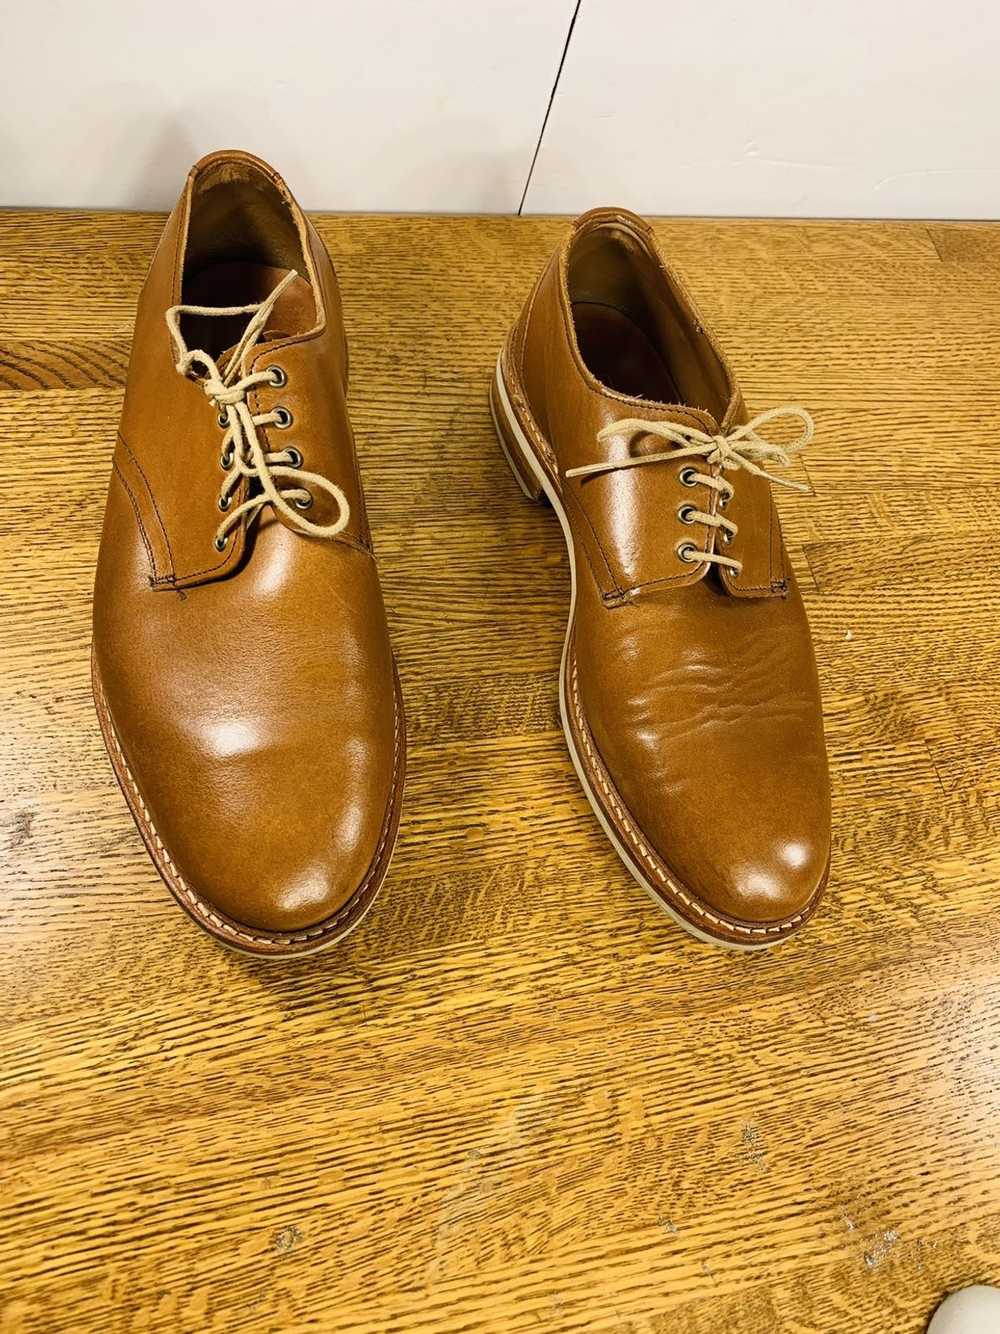 Allen Edmonds Allen Edmonds Men’s Oxfords Shoes - image 9